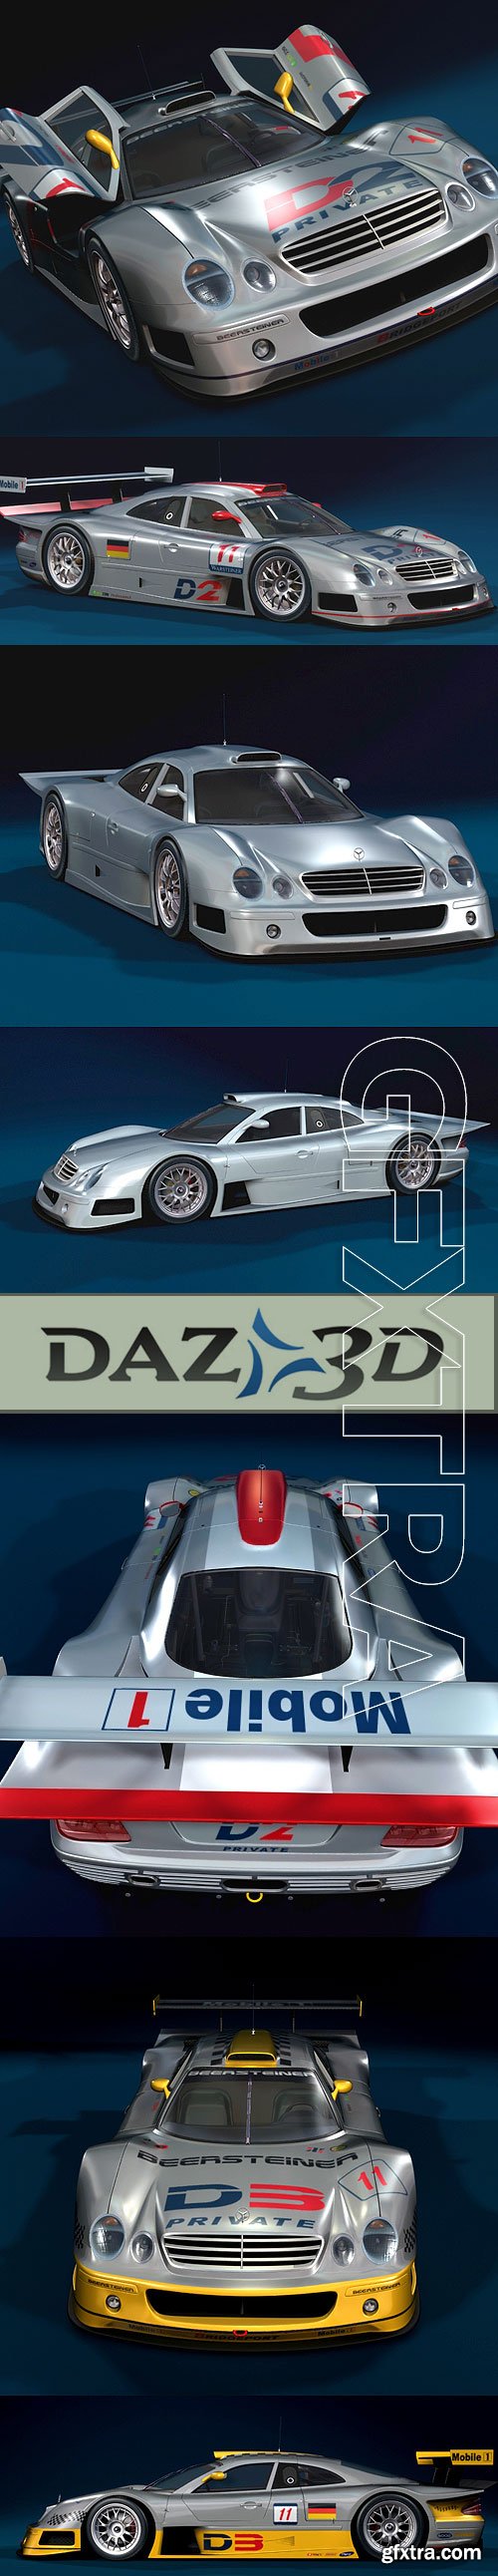 DAZ3D CKL GTR Race Car